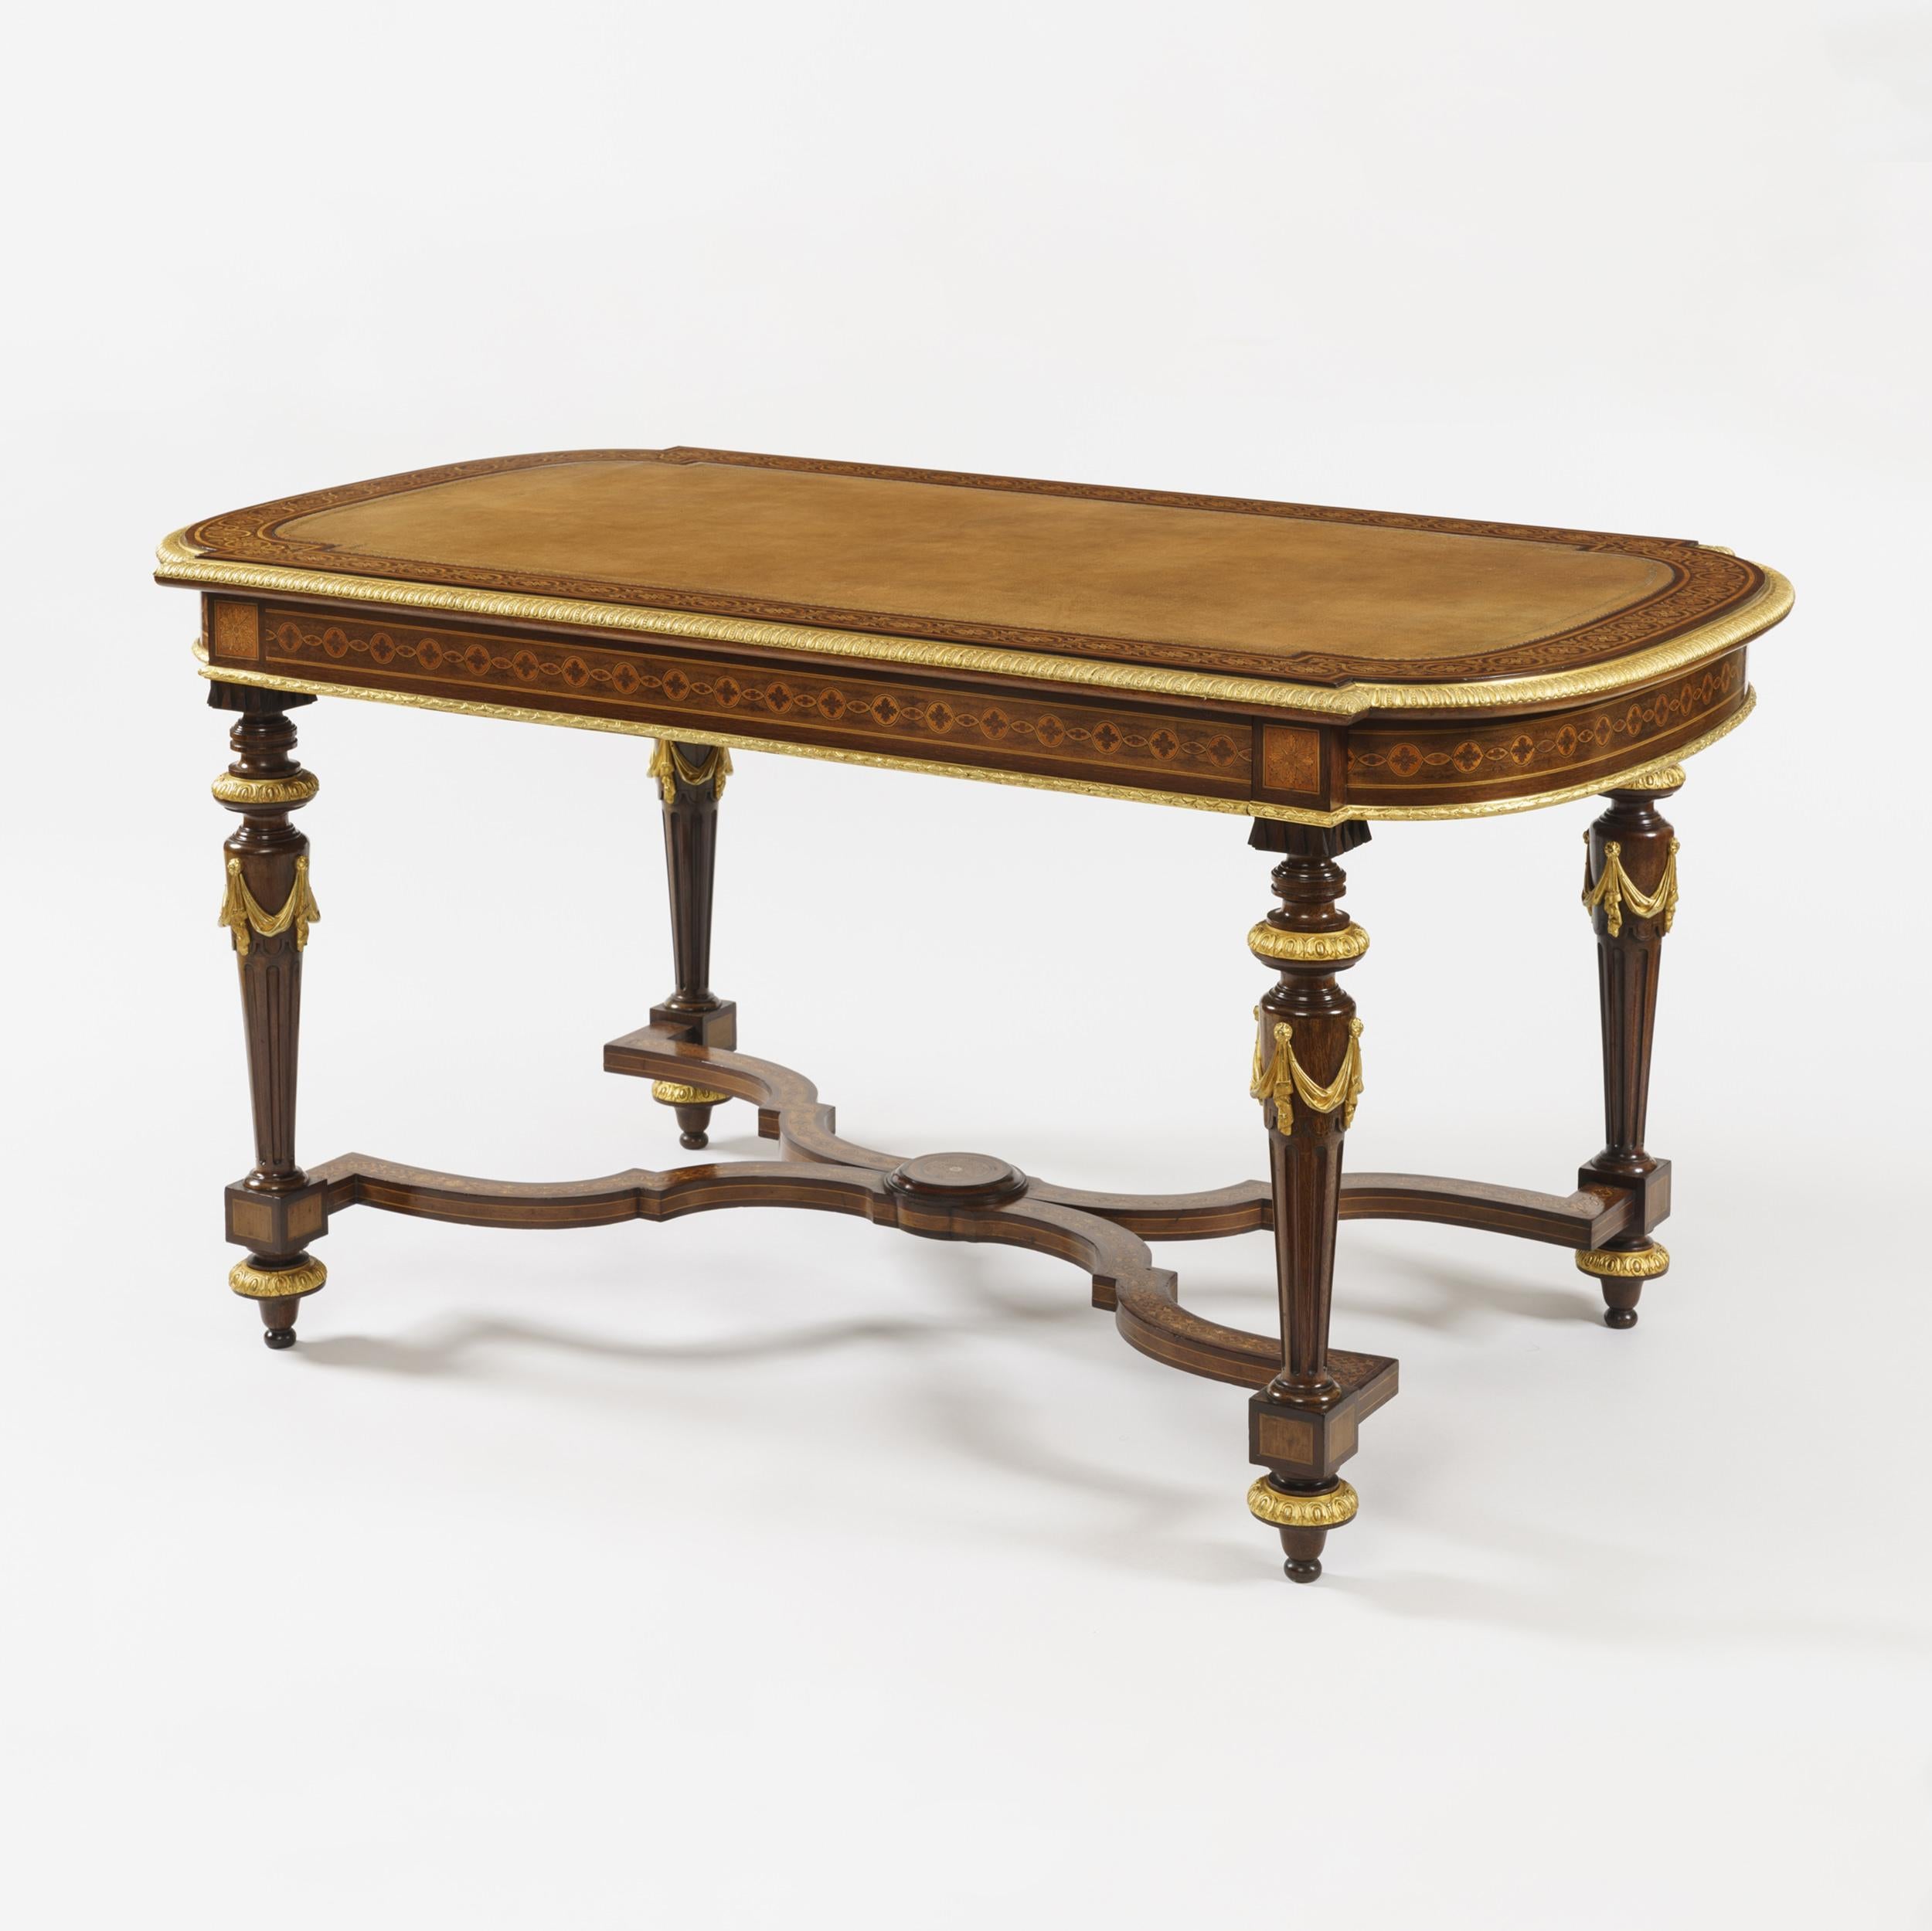 Ein guter Schreibtisch in der Manier von Holland & Sons

Konstruiert in Mahagoni, mit Holzeinlagen und vergoldeten Bronzebeschlägen; von rechteckiger Form, mit gebogenen Enden, die sich von ringförmig gedrehten, kannelierten und sich verjüngenden